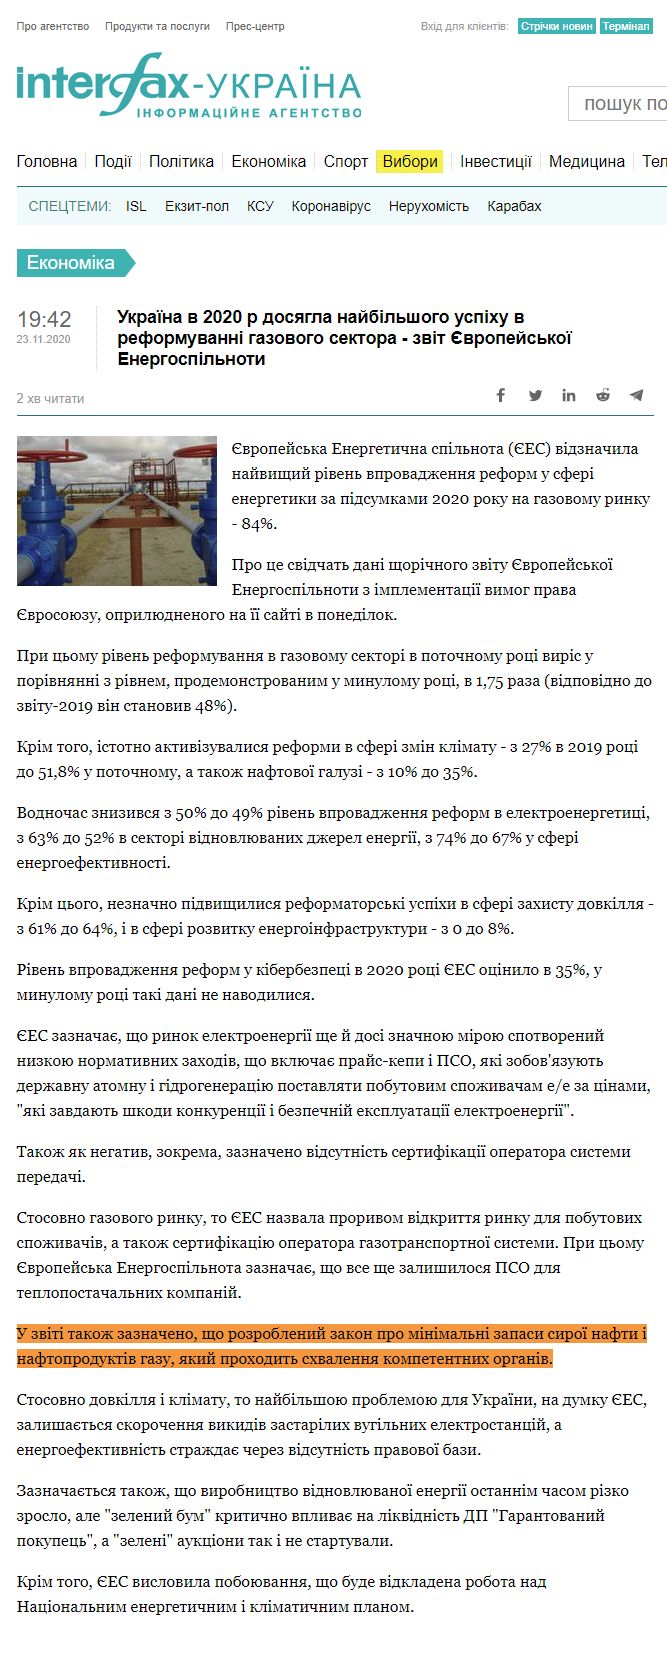 https://ua.interfax.com.ua/news/economic/705545.html